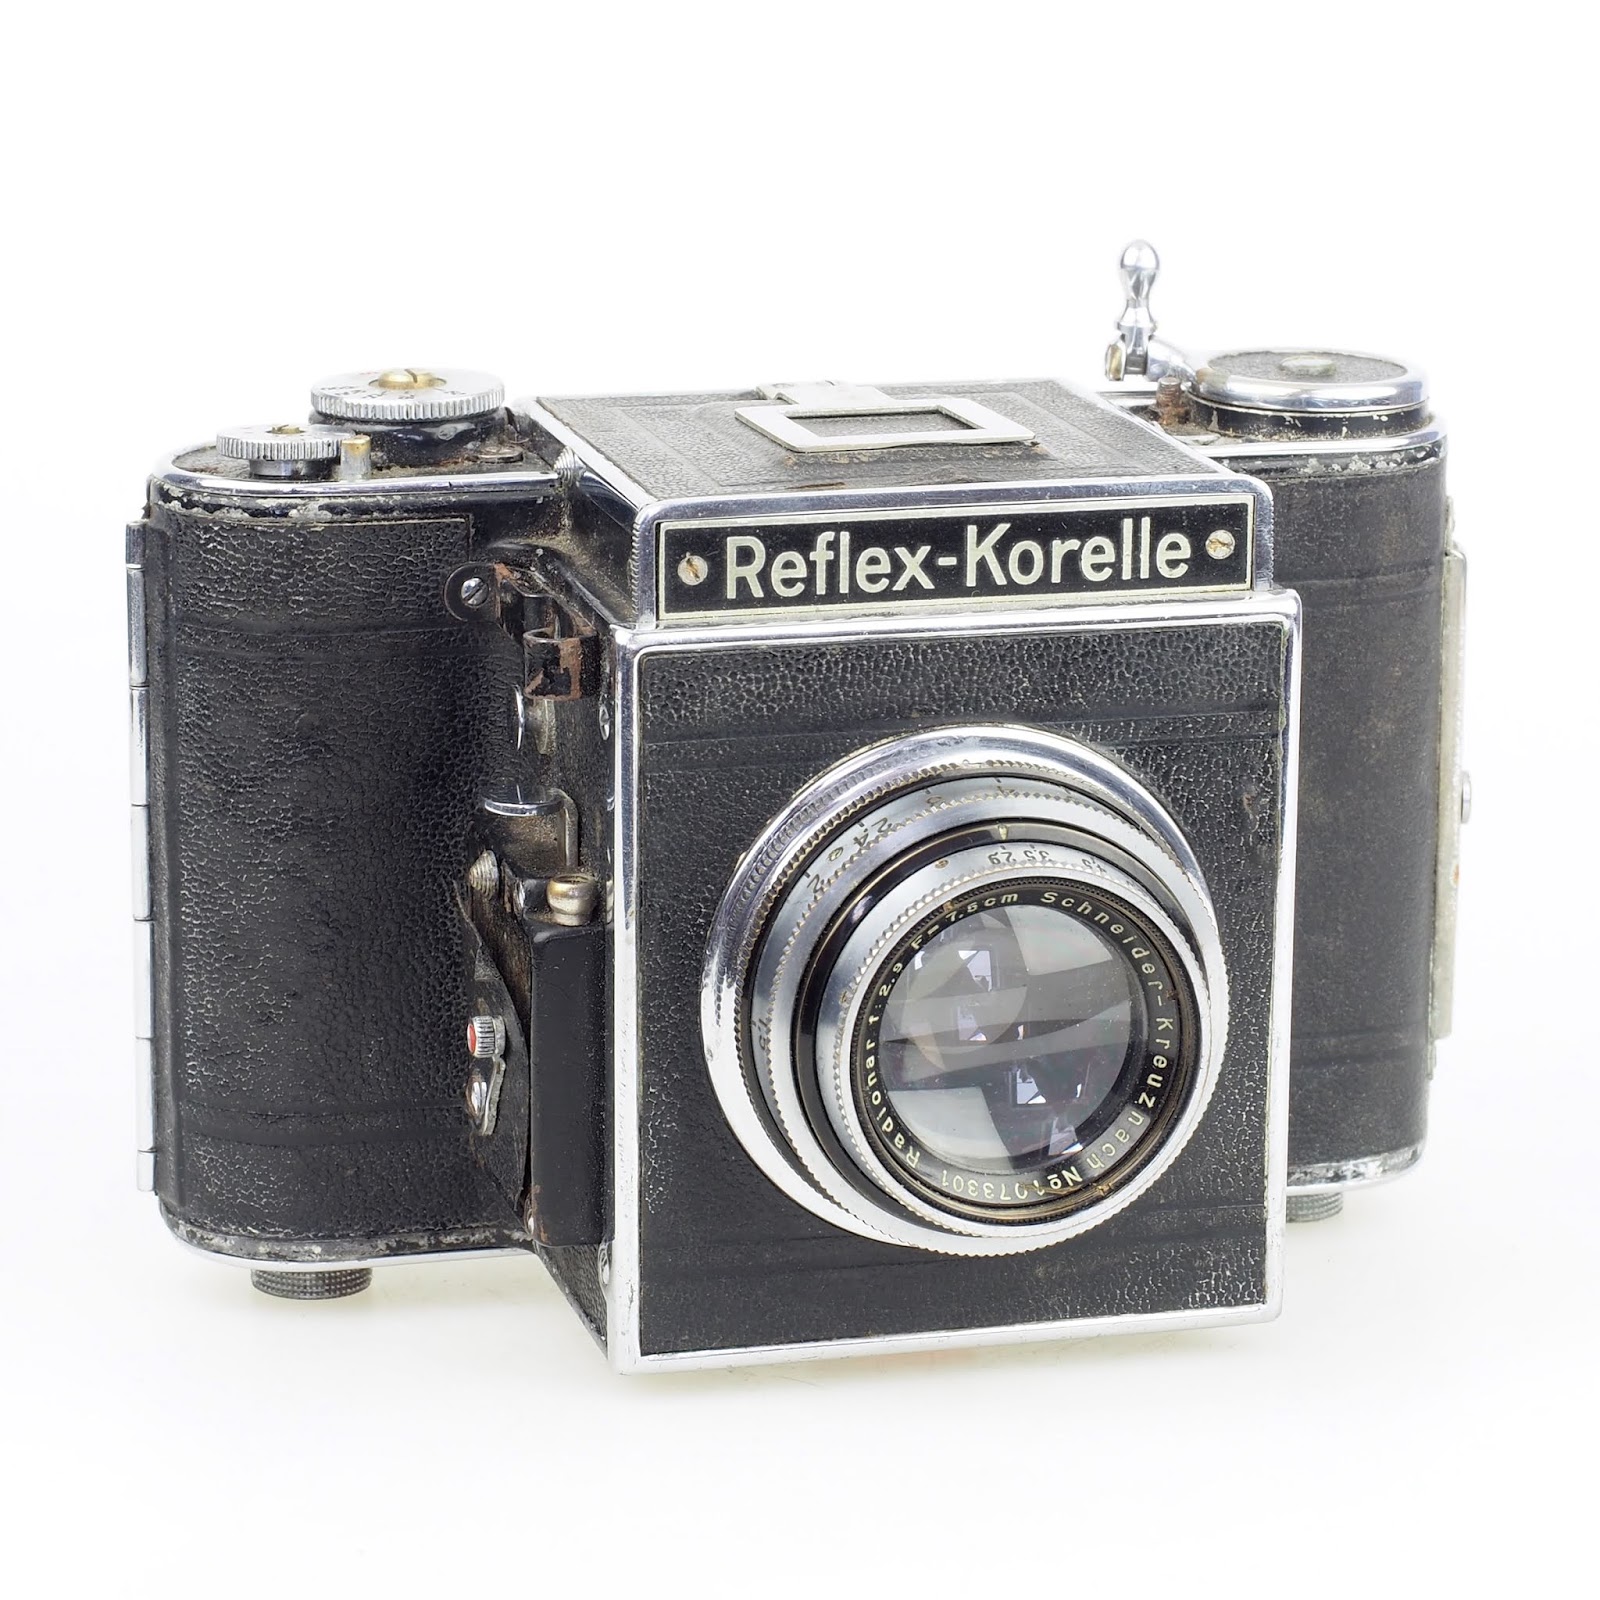 Reflex Korelle IIa (Germany, 1935-1939)